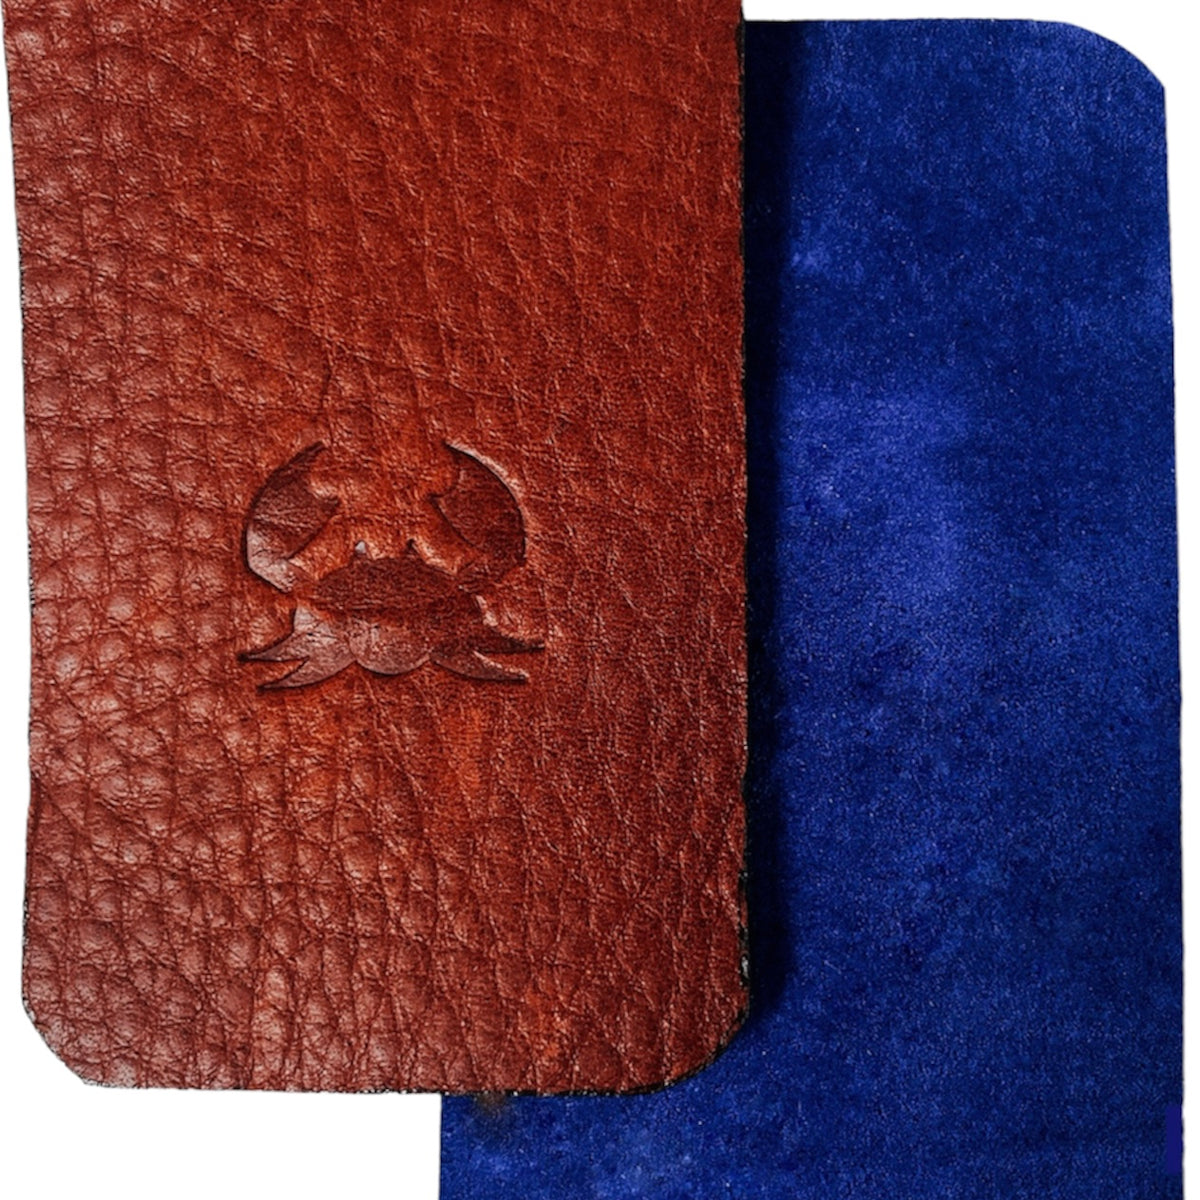 Handmade Full Grain Leather Wallet for Men and Women 